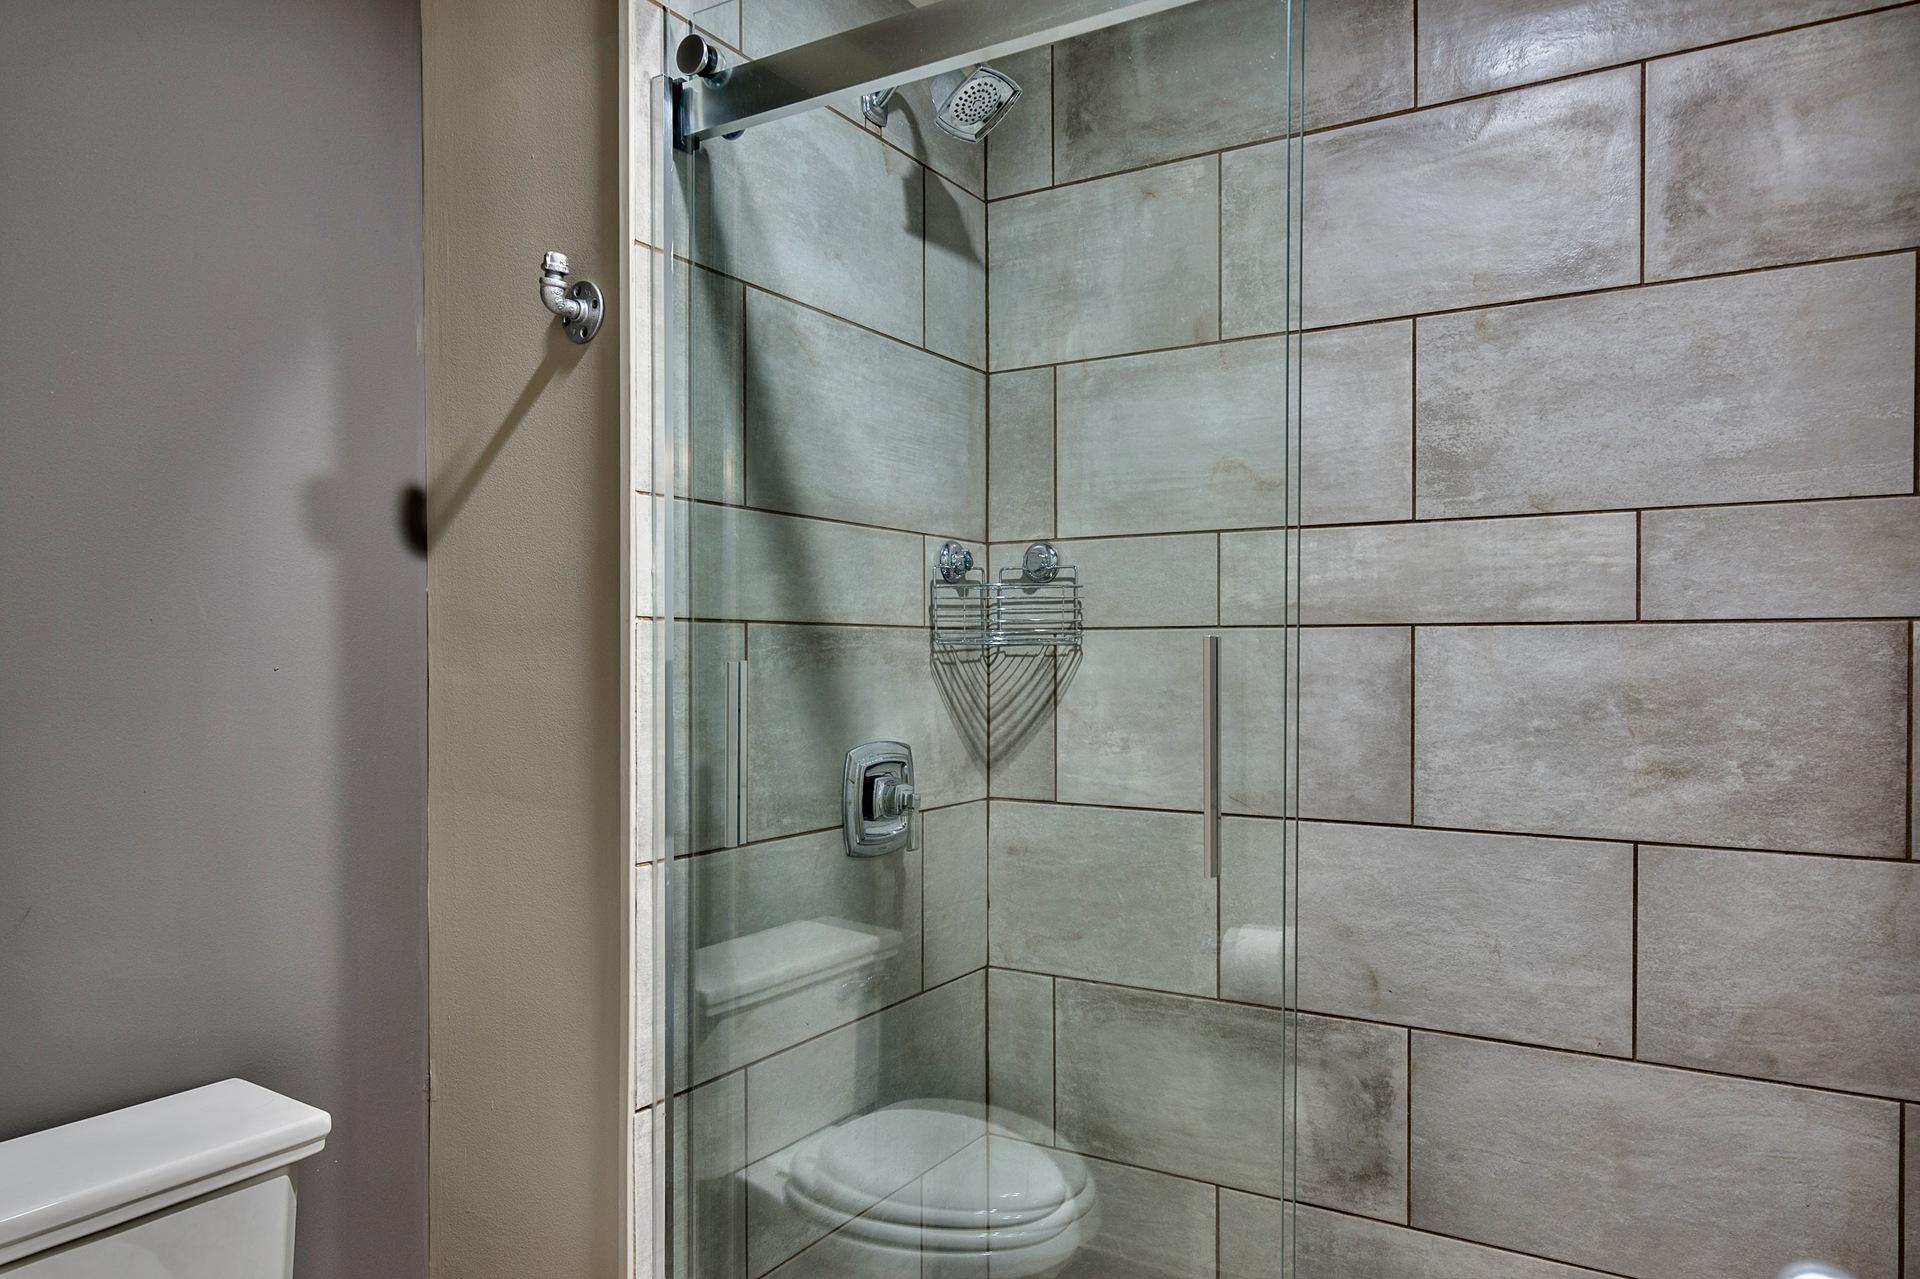 Guest Bathroom, tiled shower